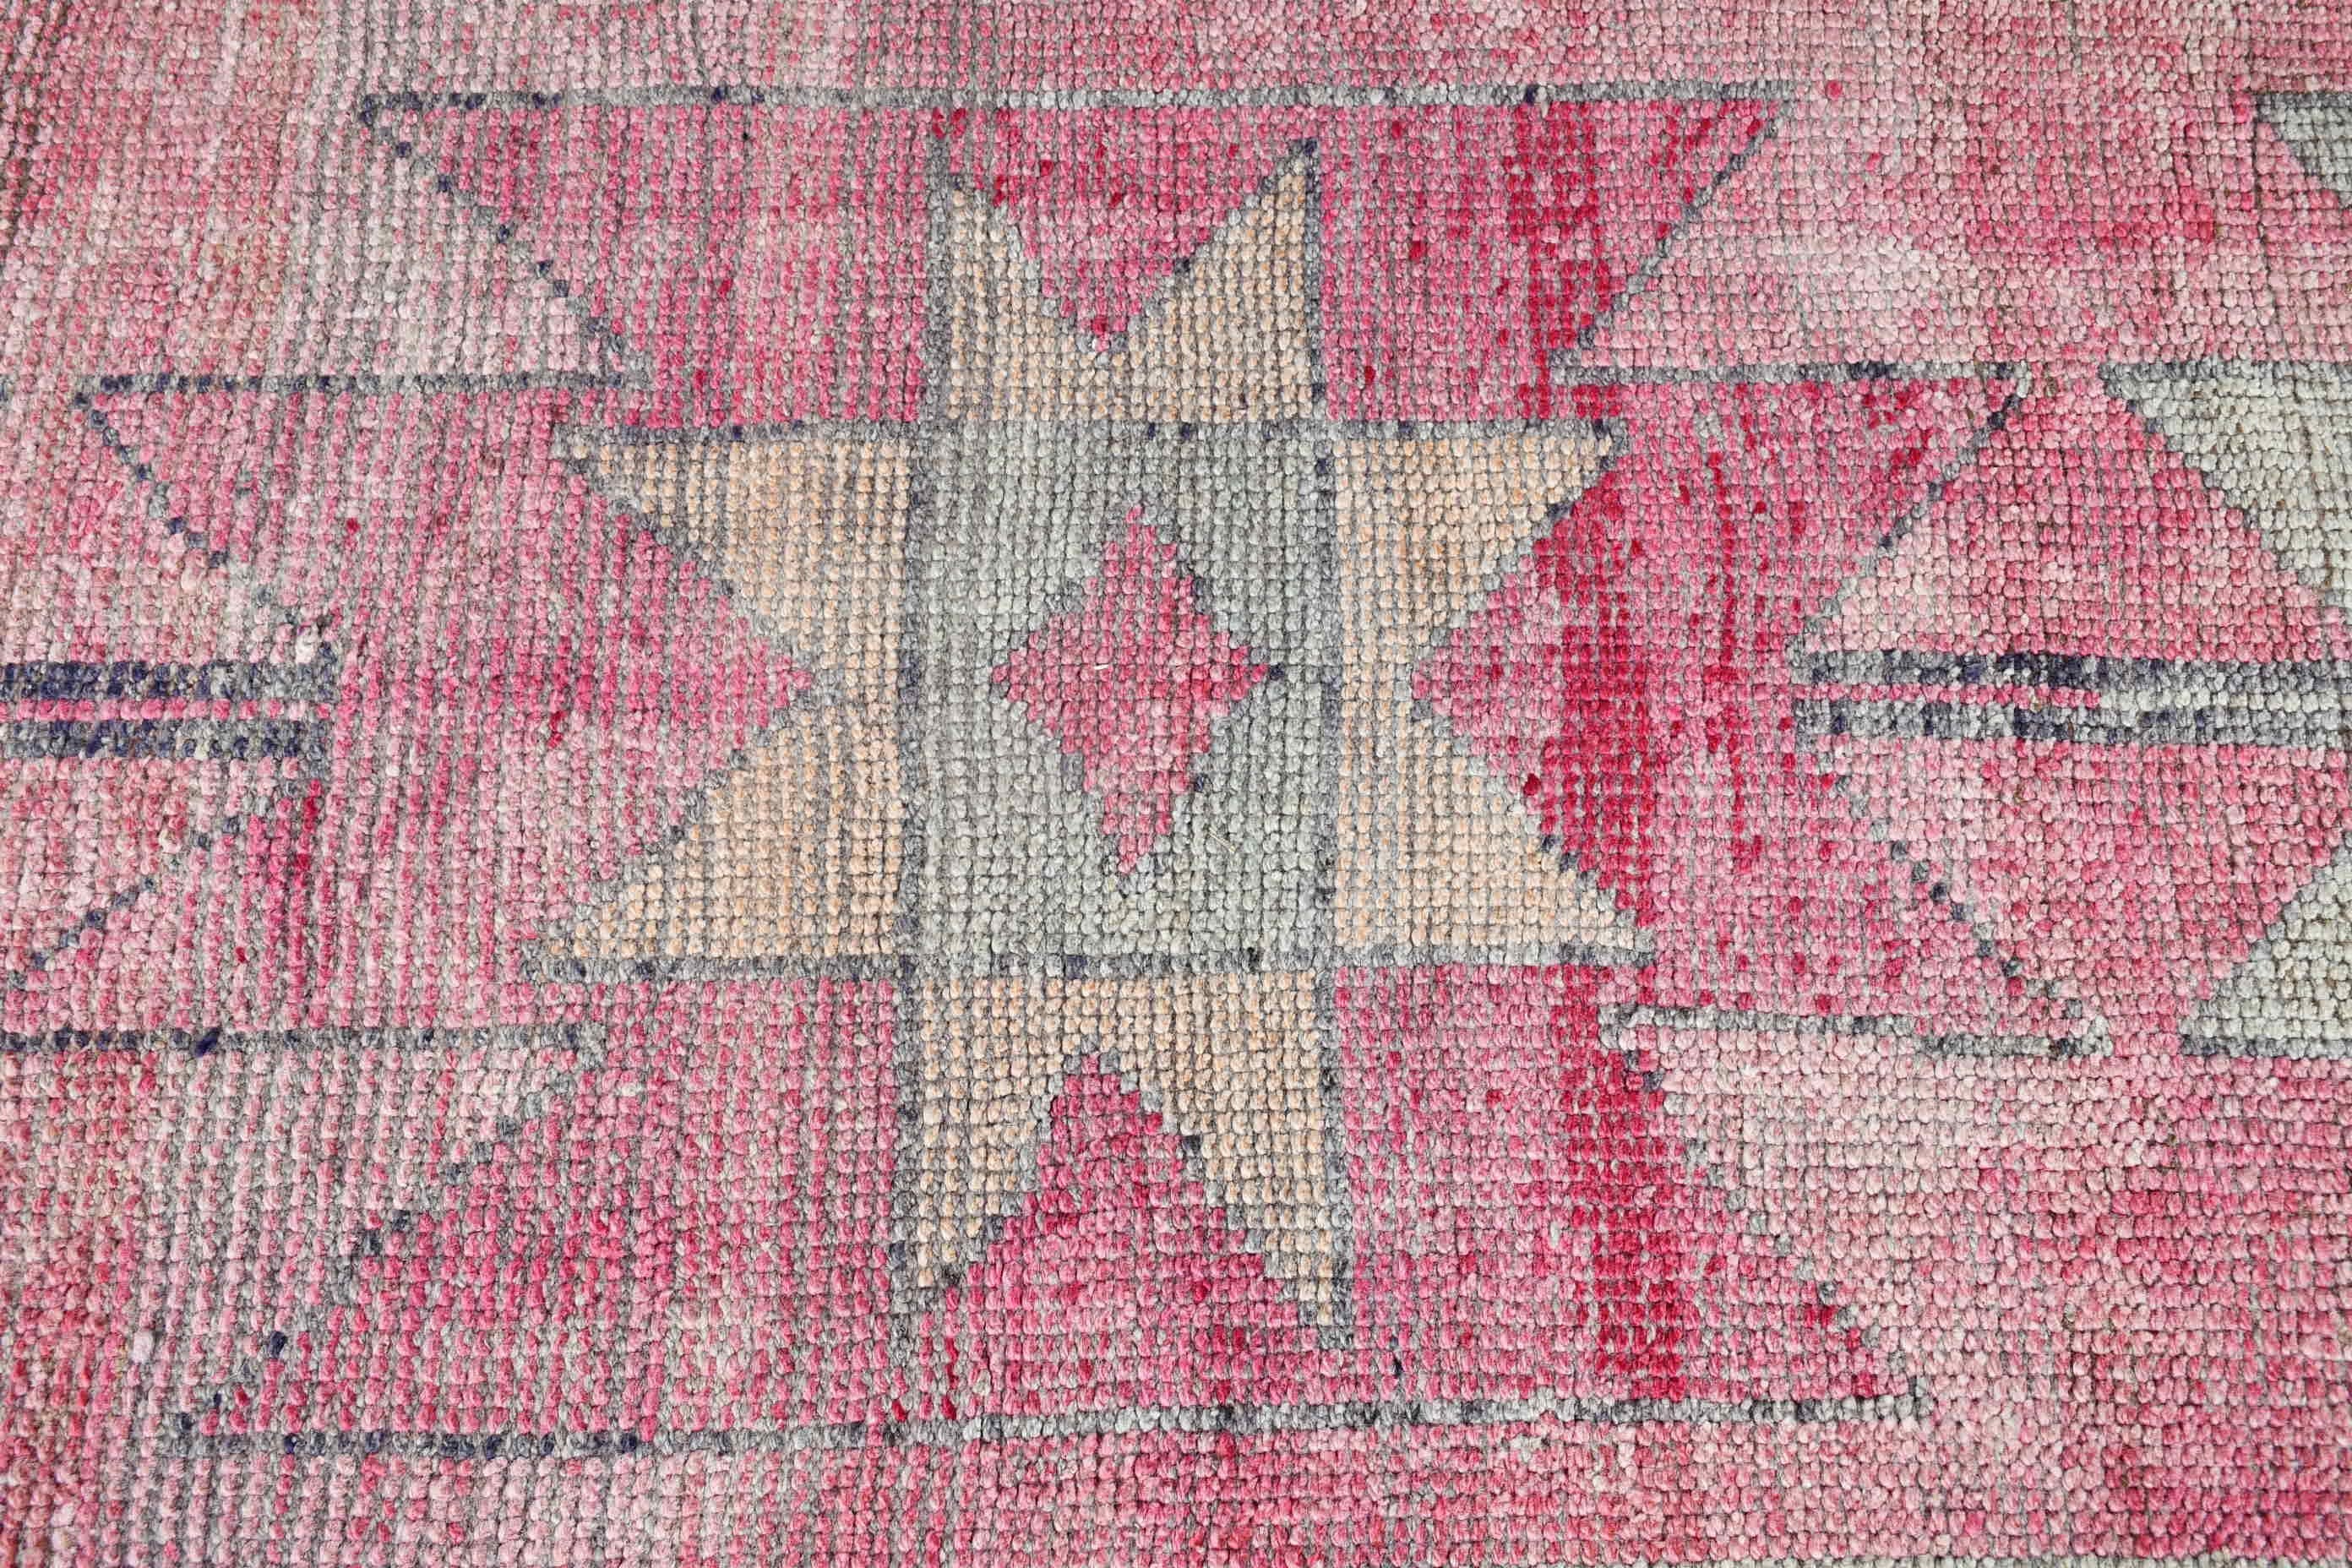 Pink Antique Rug, Anatolian Rugs, Bedroom Rug, Vintage Rug, Corridor Rugs, Stair Rug, 3x10.8 ft Runner Rug, Turkish Rug, Rugs for Corridor